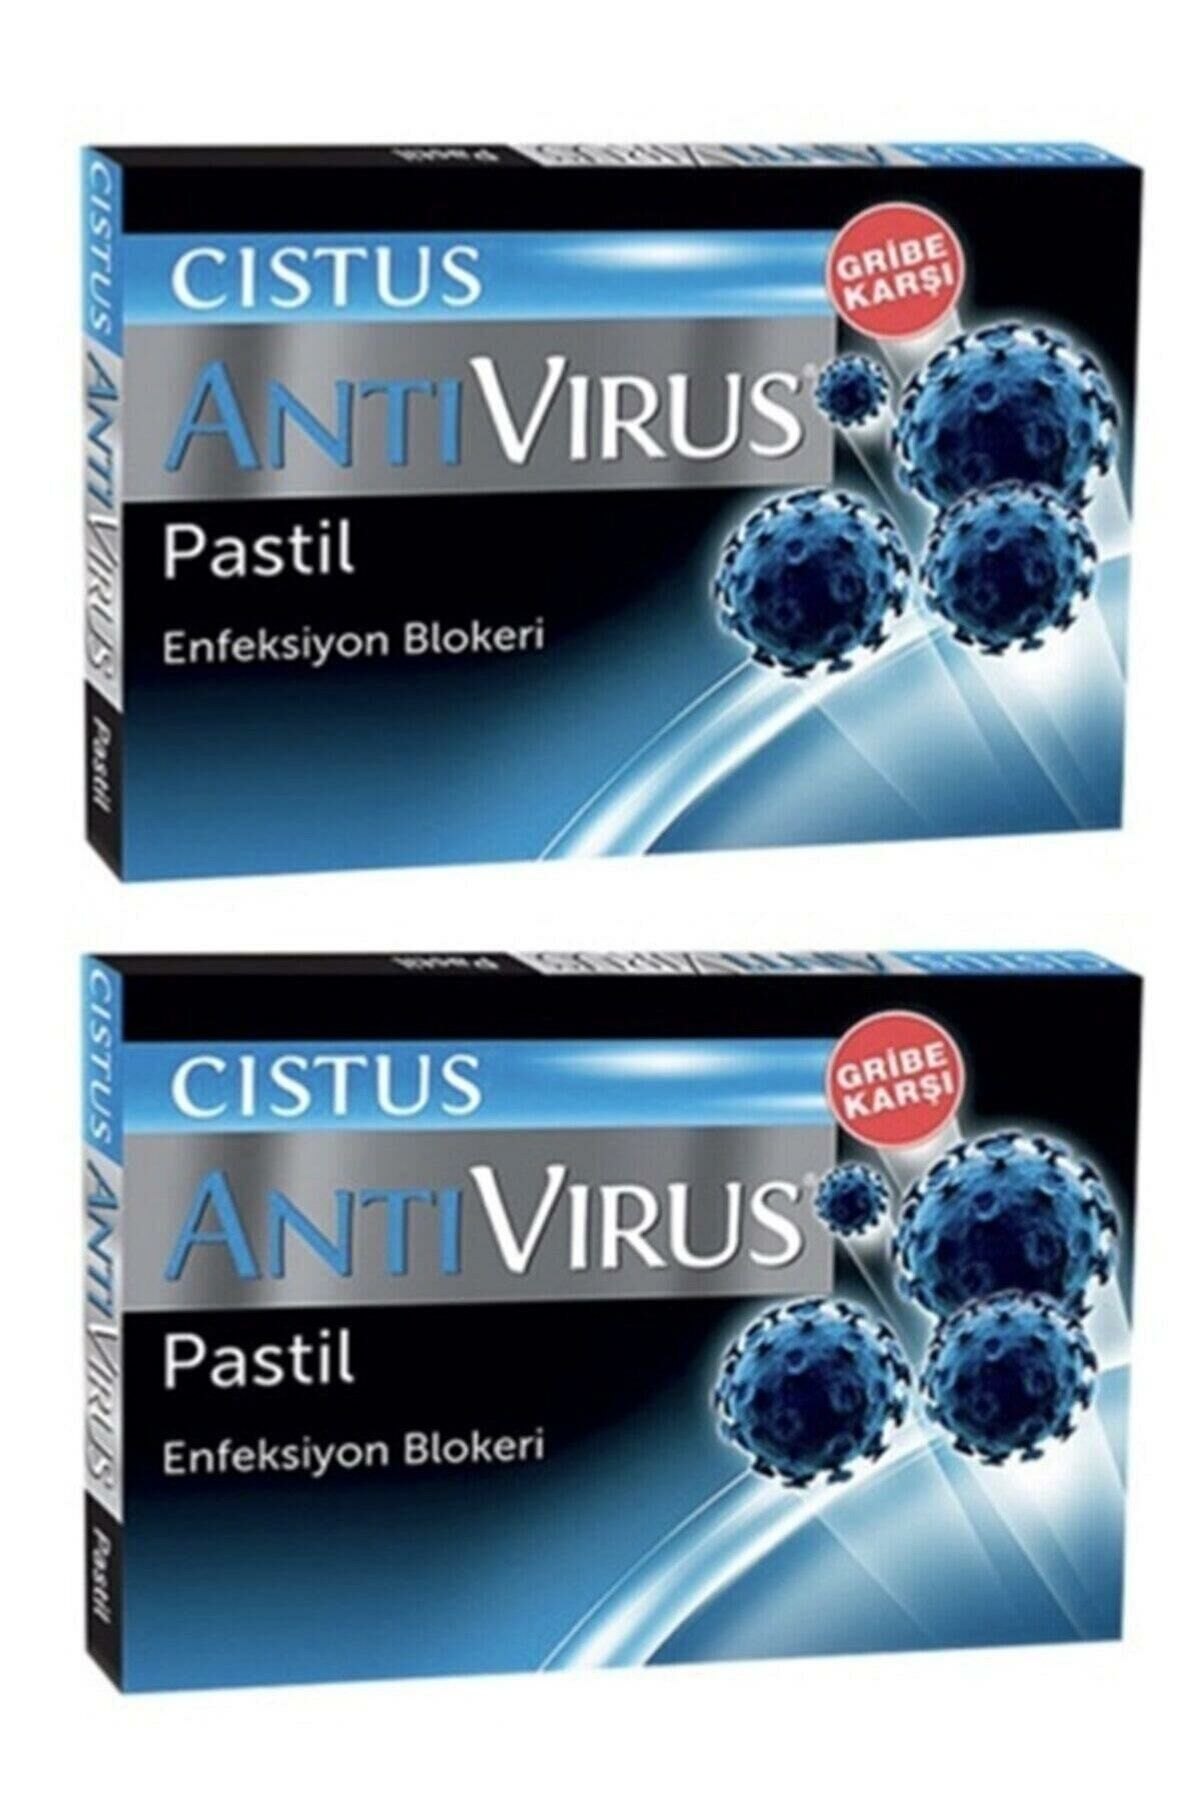 Cıstus Antivirus Pastil 10*2 Adet